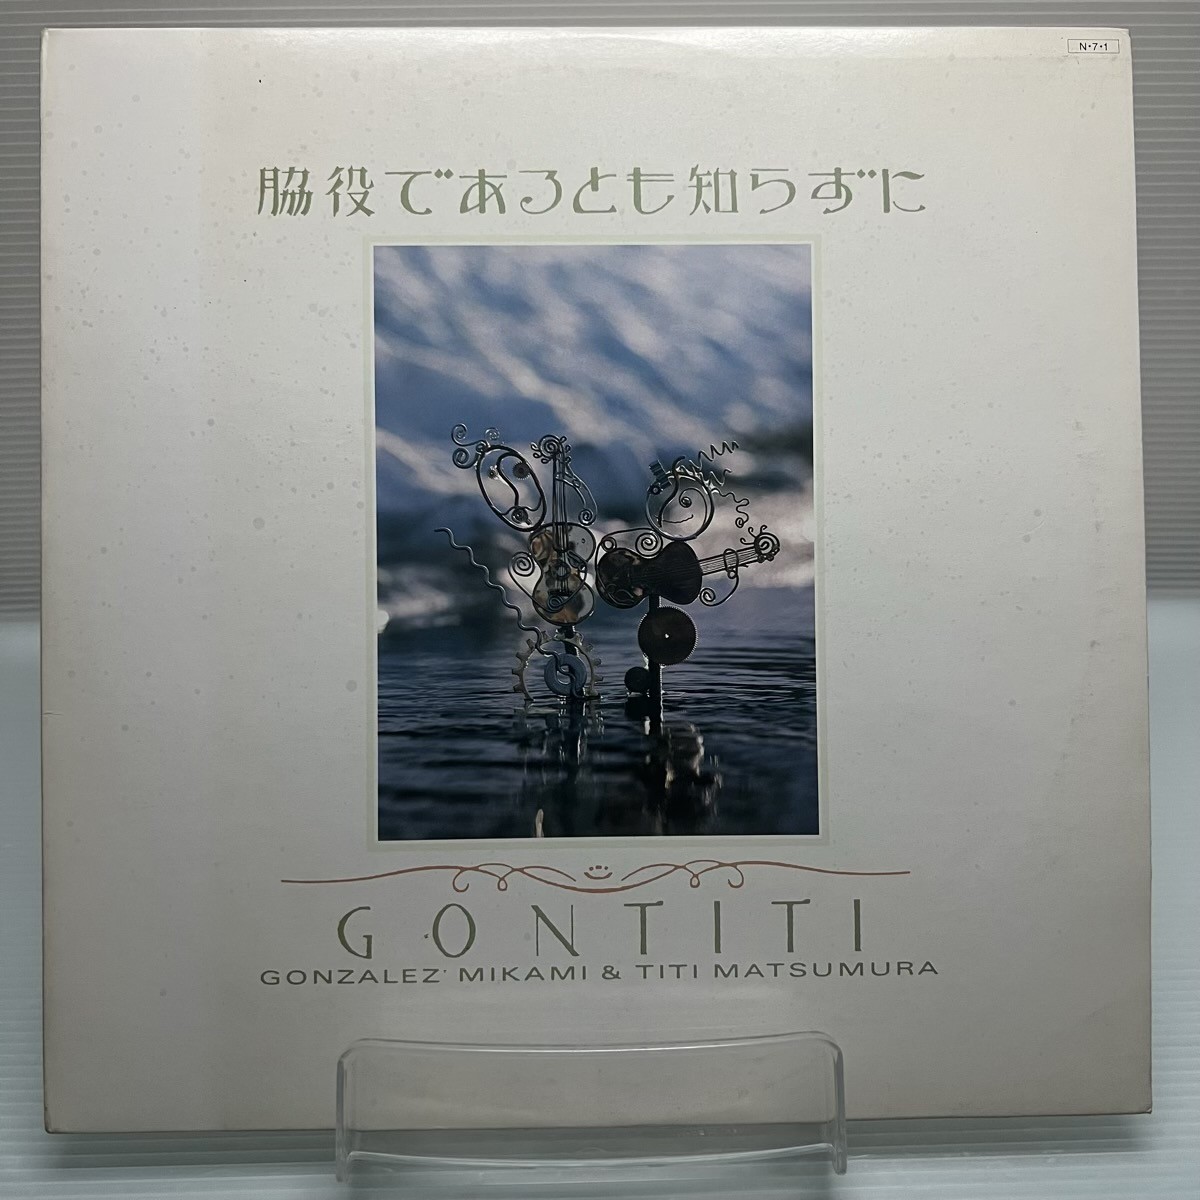 ヤフオク! -「gontiti lp」(レコード) の落札相場・落札価格